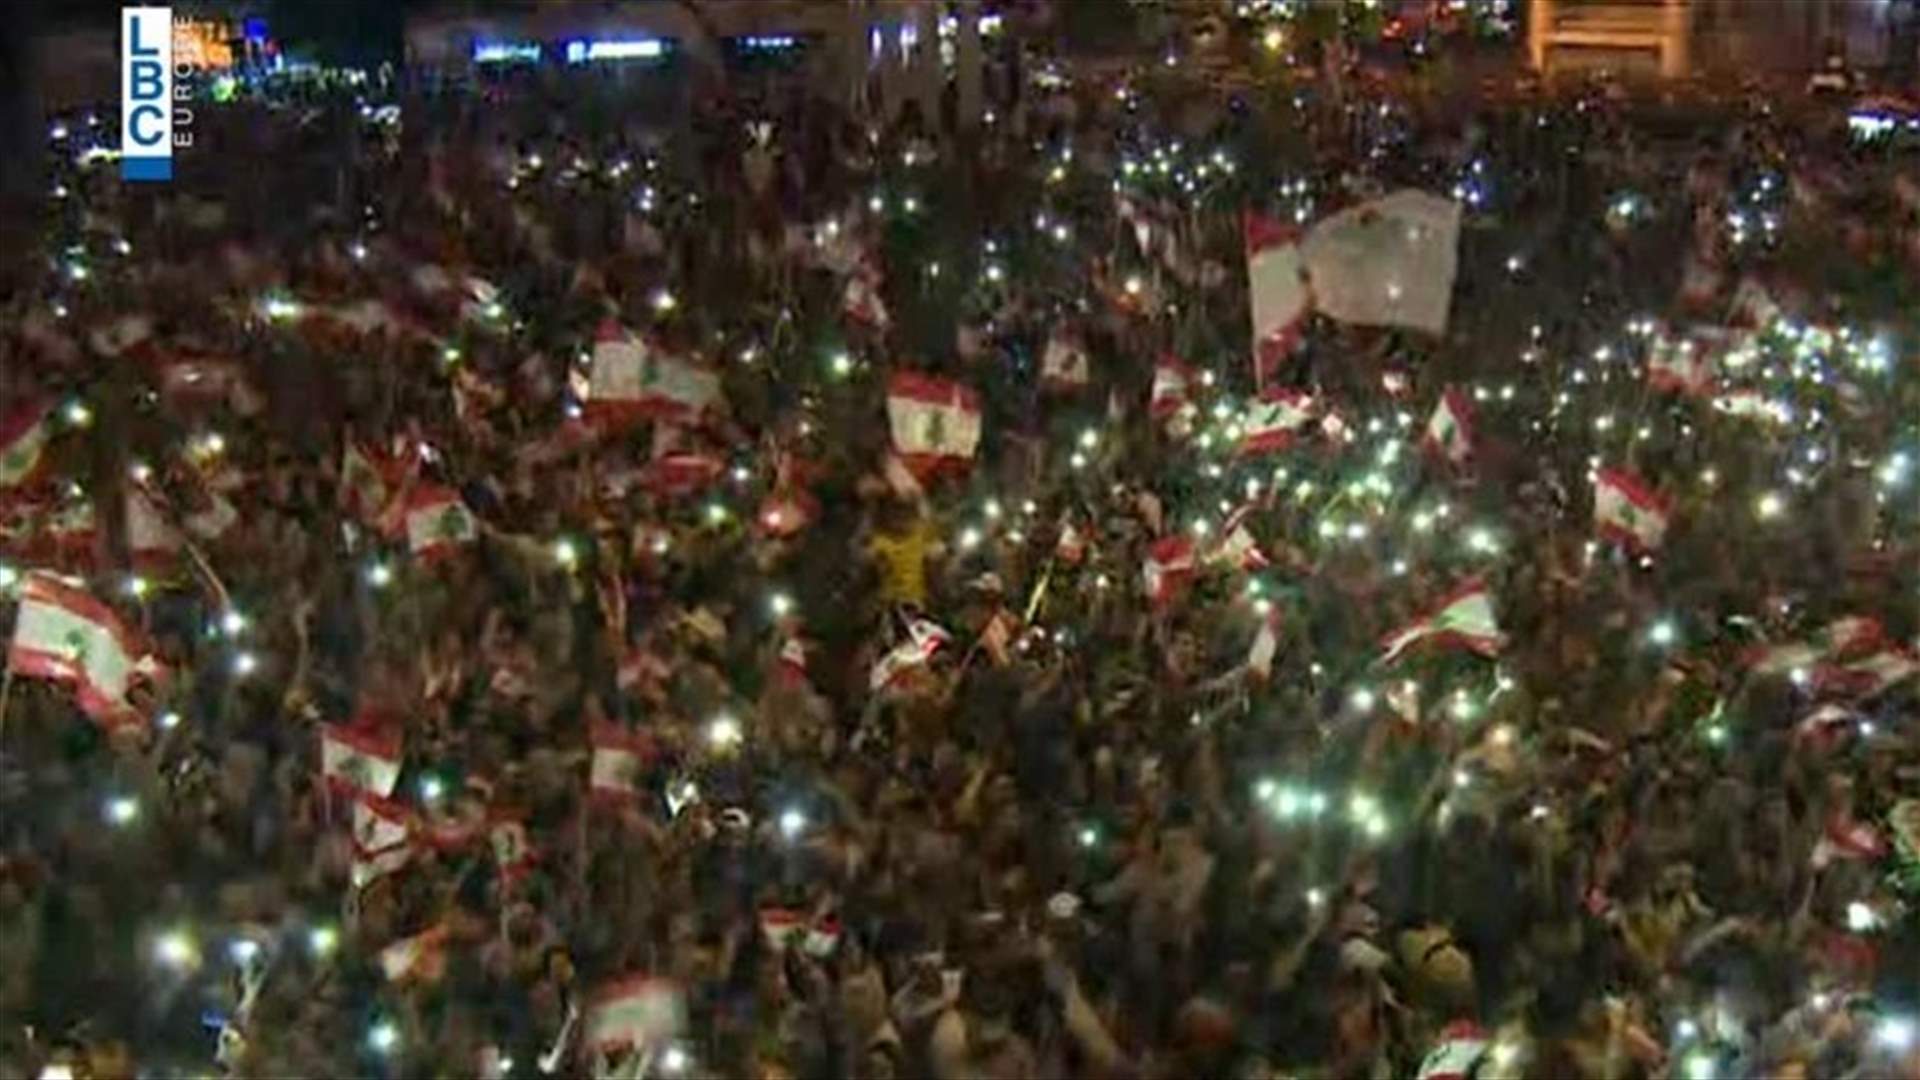 Video shows massive demonstrations across Lebanese regions